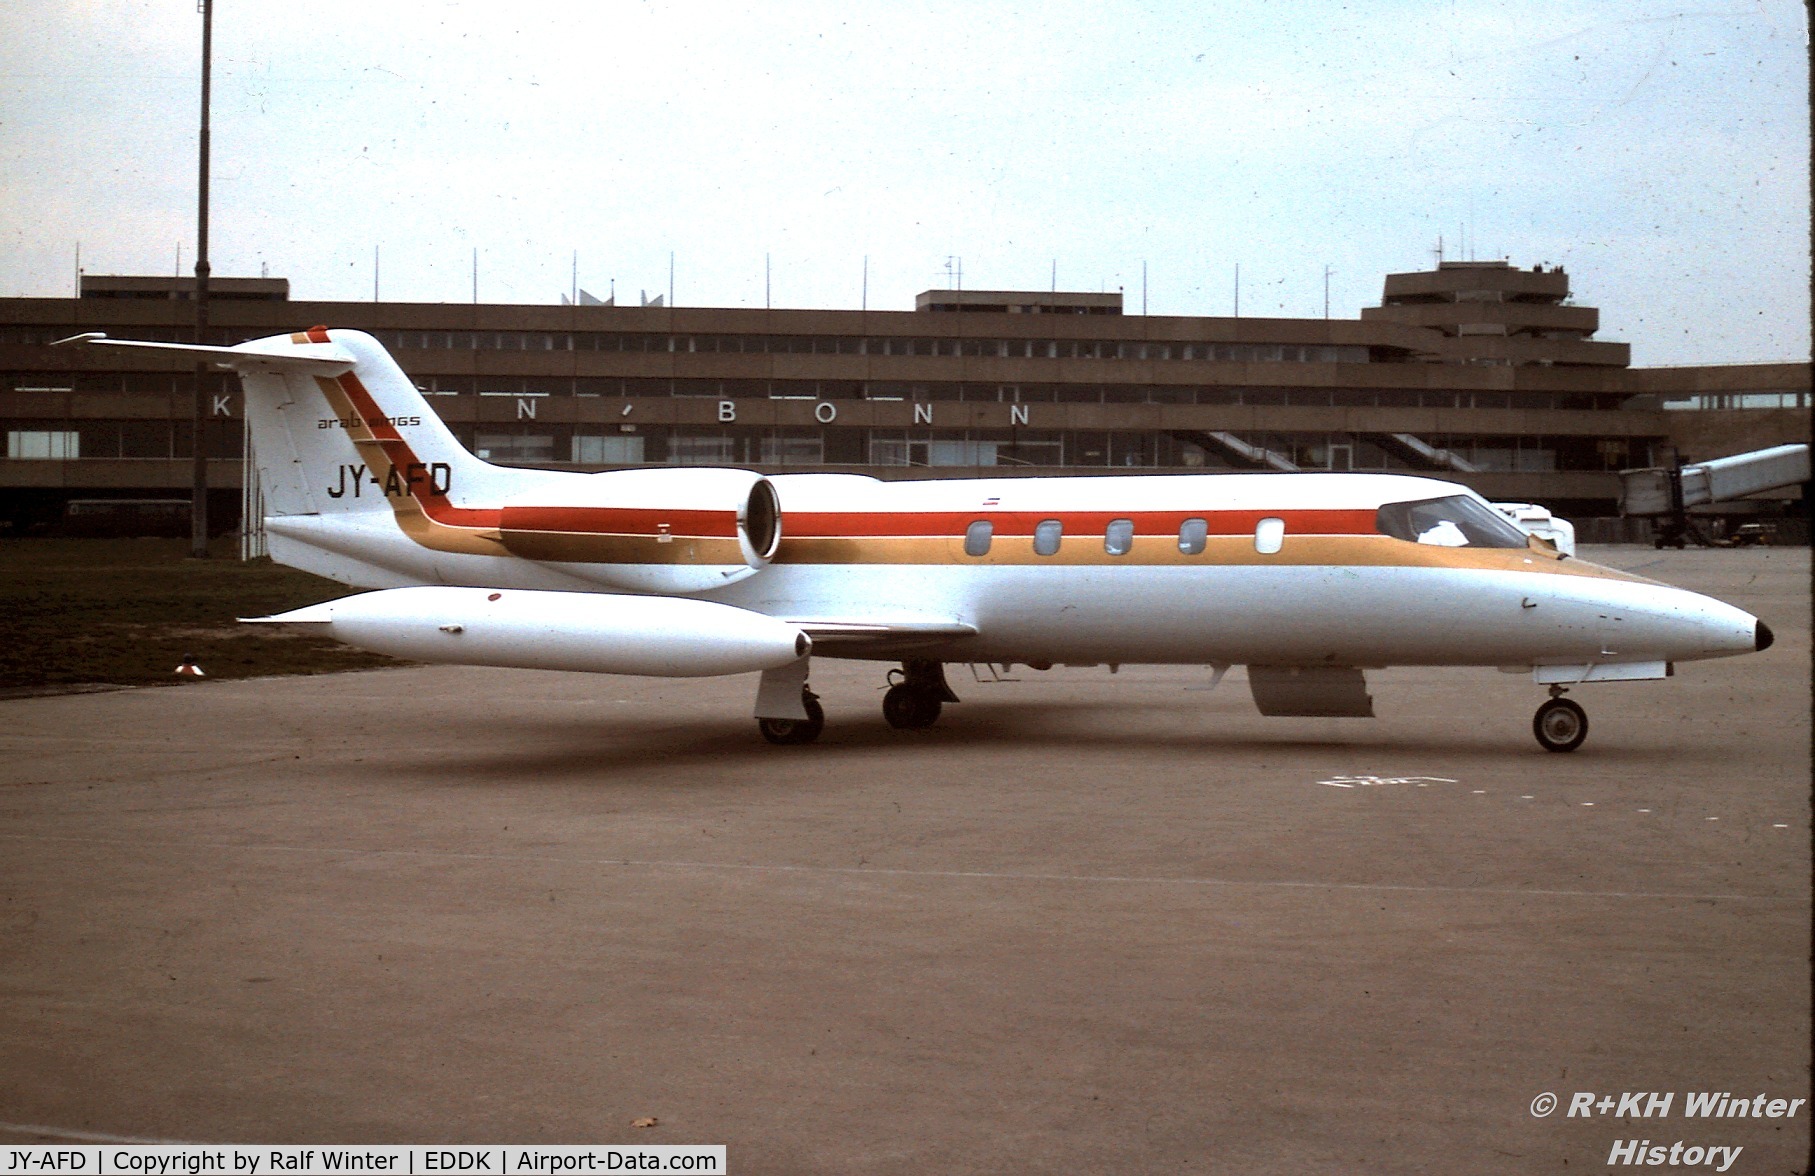 JY-AFD, 1977 Gates Learjet 35A C/N 071, Bombardier Learjet 35A - Arab. Wings - JY-AFD - 1978 - CGN - From a slide